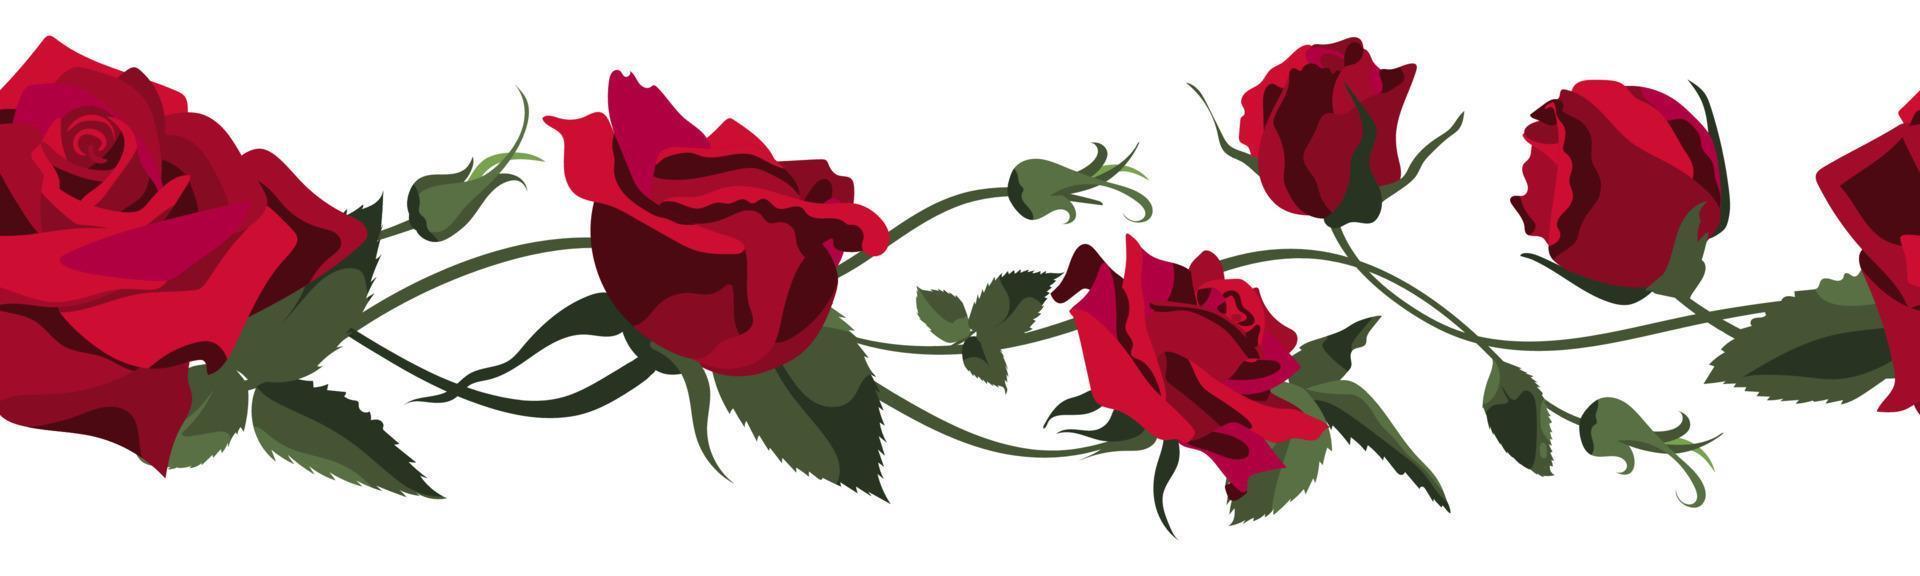 fundo floral vetorial com rosas vermelhas, botões e folhas. design de fronteira isolado no fundo branco vetor